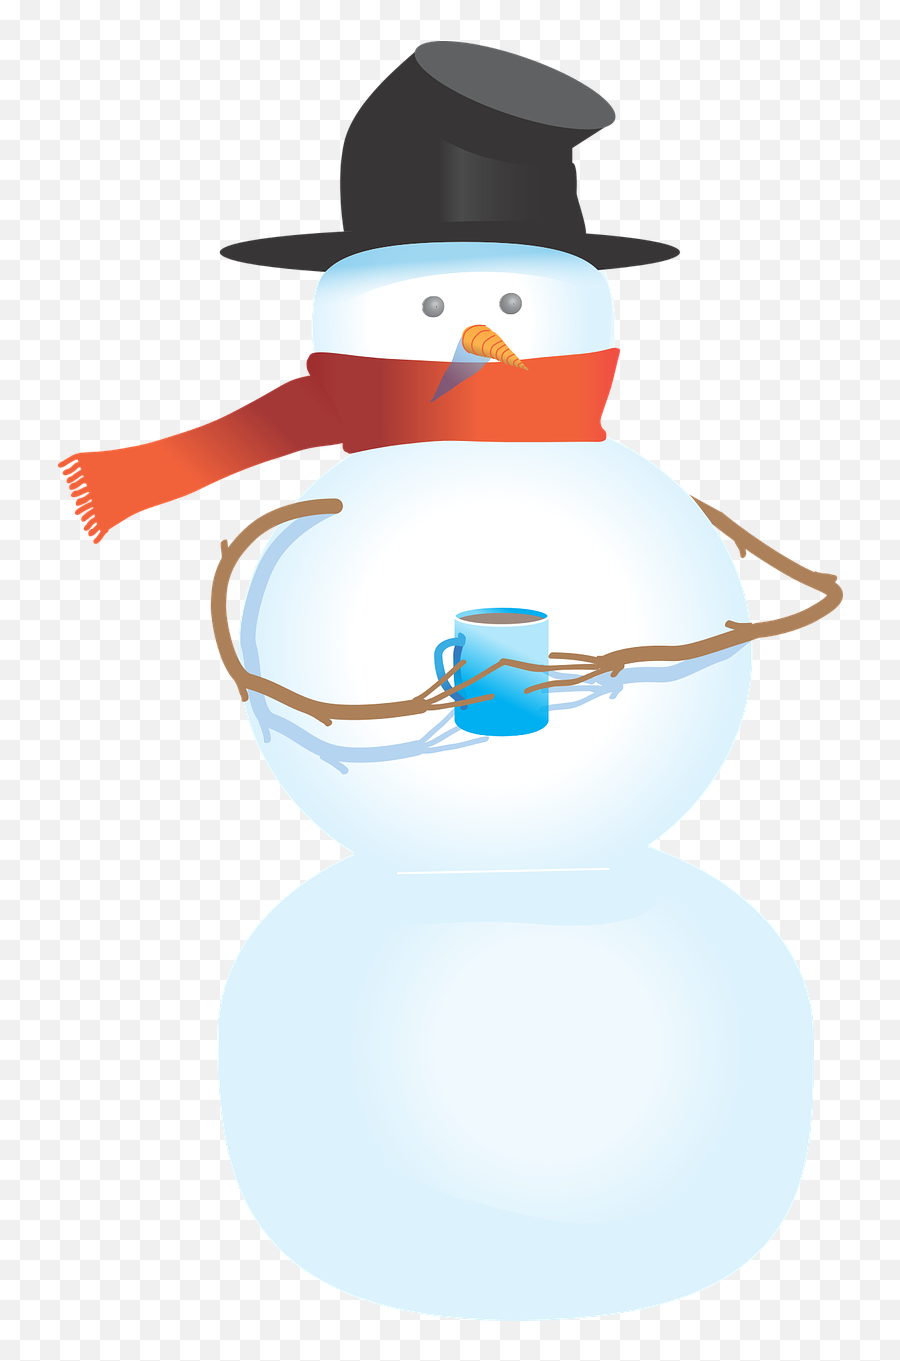 Snowman Top Hat Clipart Free Images 2 - Clipartix Snowman Holding Mug Emoji,Top Hat Clipart